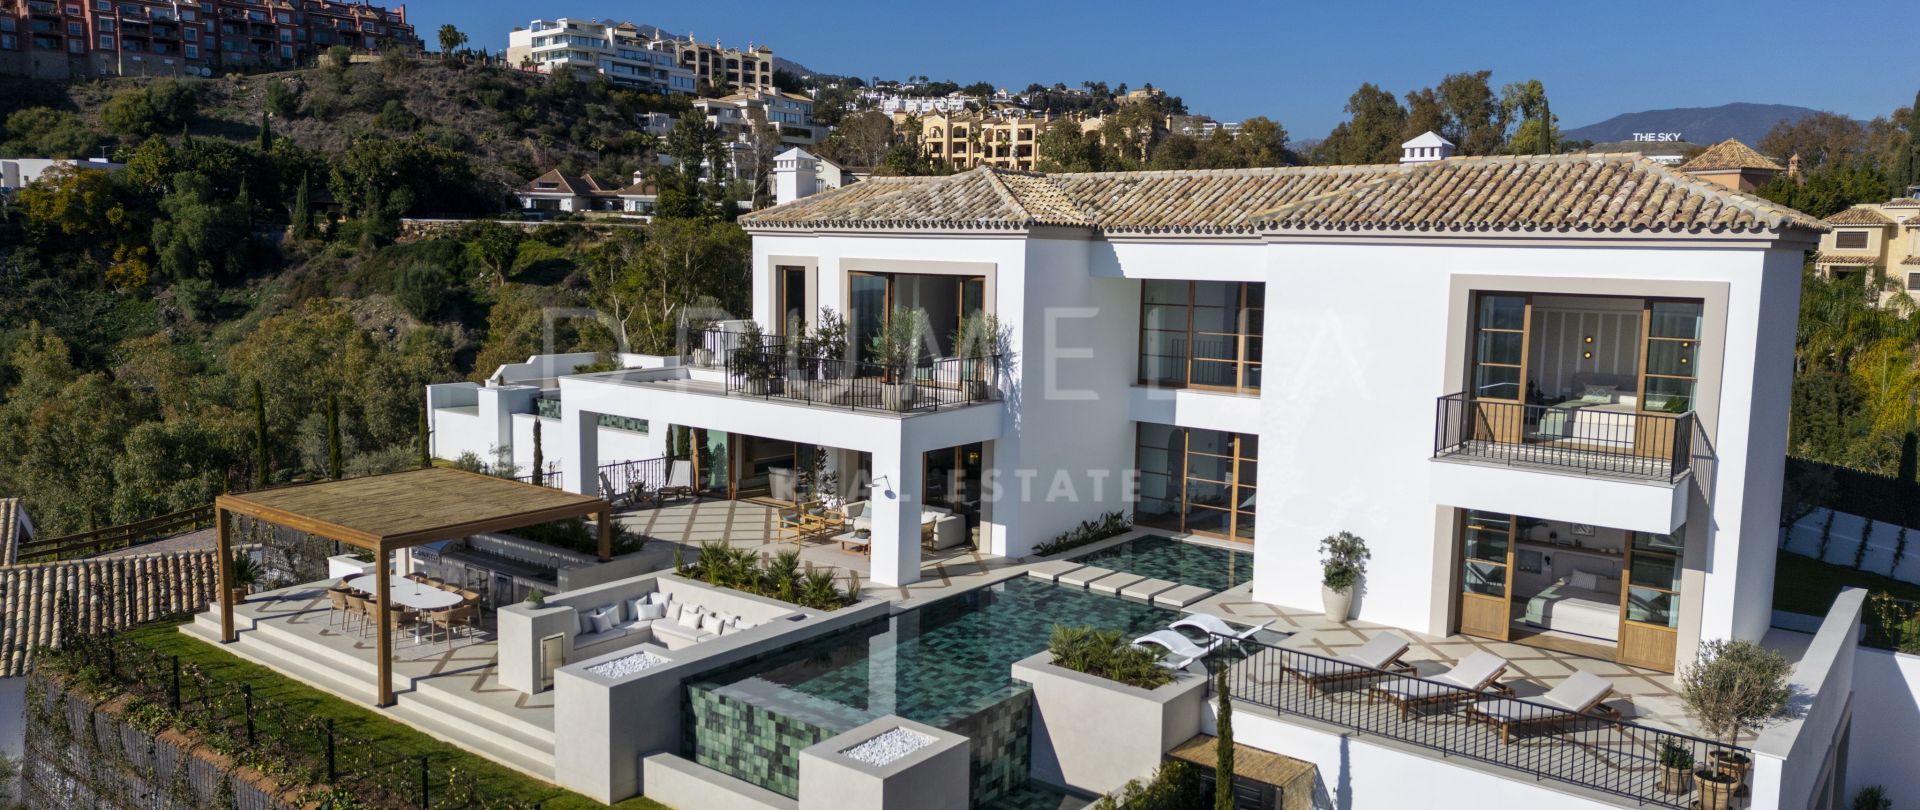 Extraordinaire résidence de style hacienda avec vue panoramique sur la mer, La Quinta